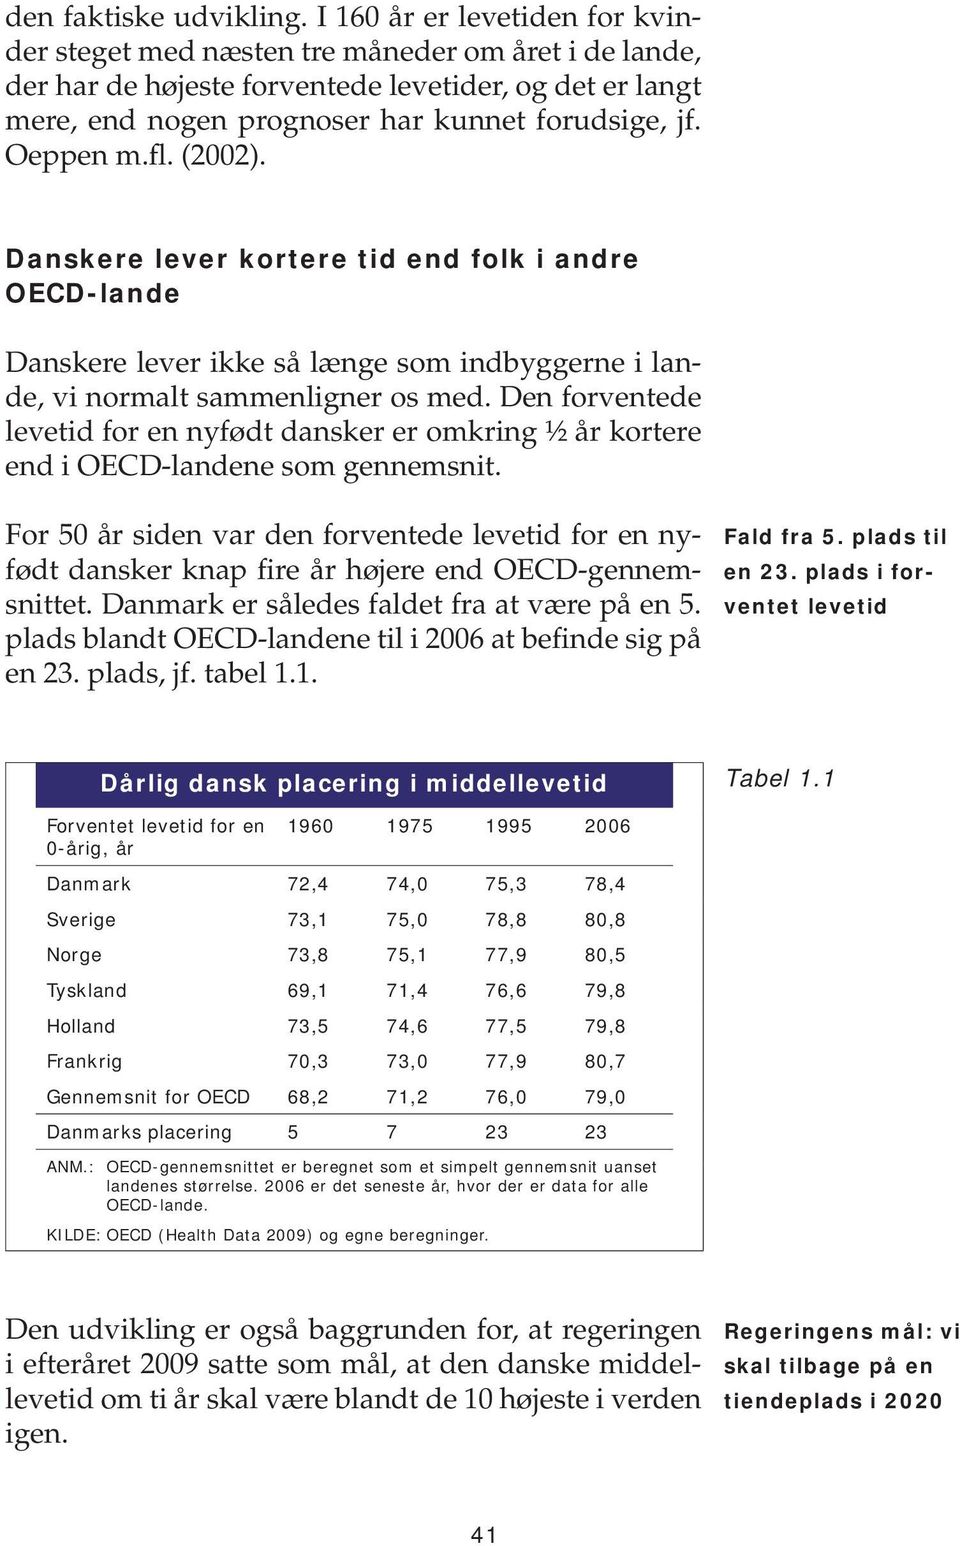 Oeppen m.fl. (22). Danskere lever kortere tid end folk i andre OECD-lande Danskere lever ikke så længe som indbyggerne i lande, vi normalt sammenligner os med.